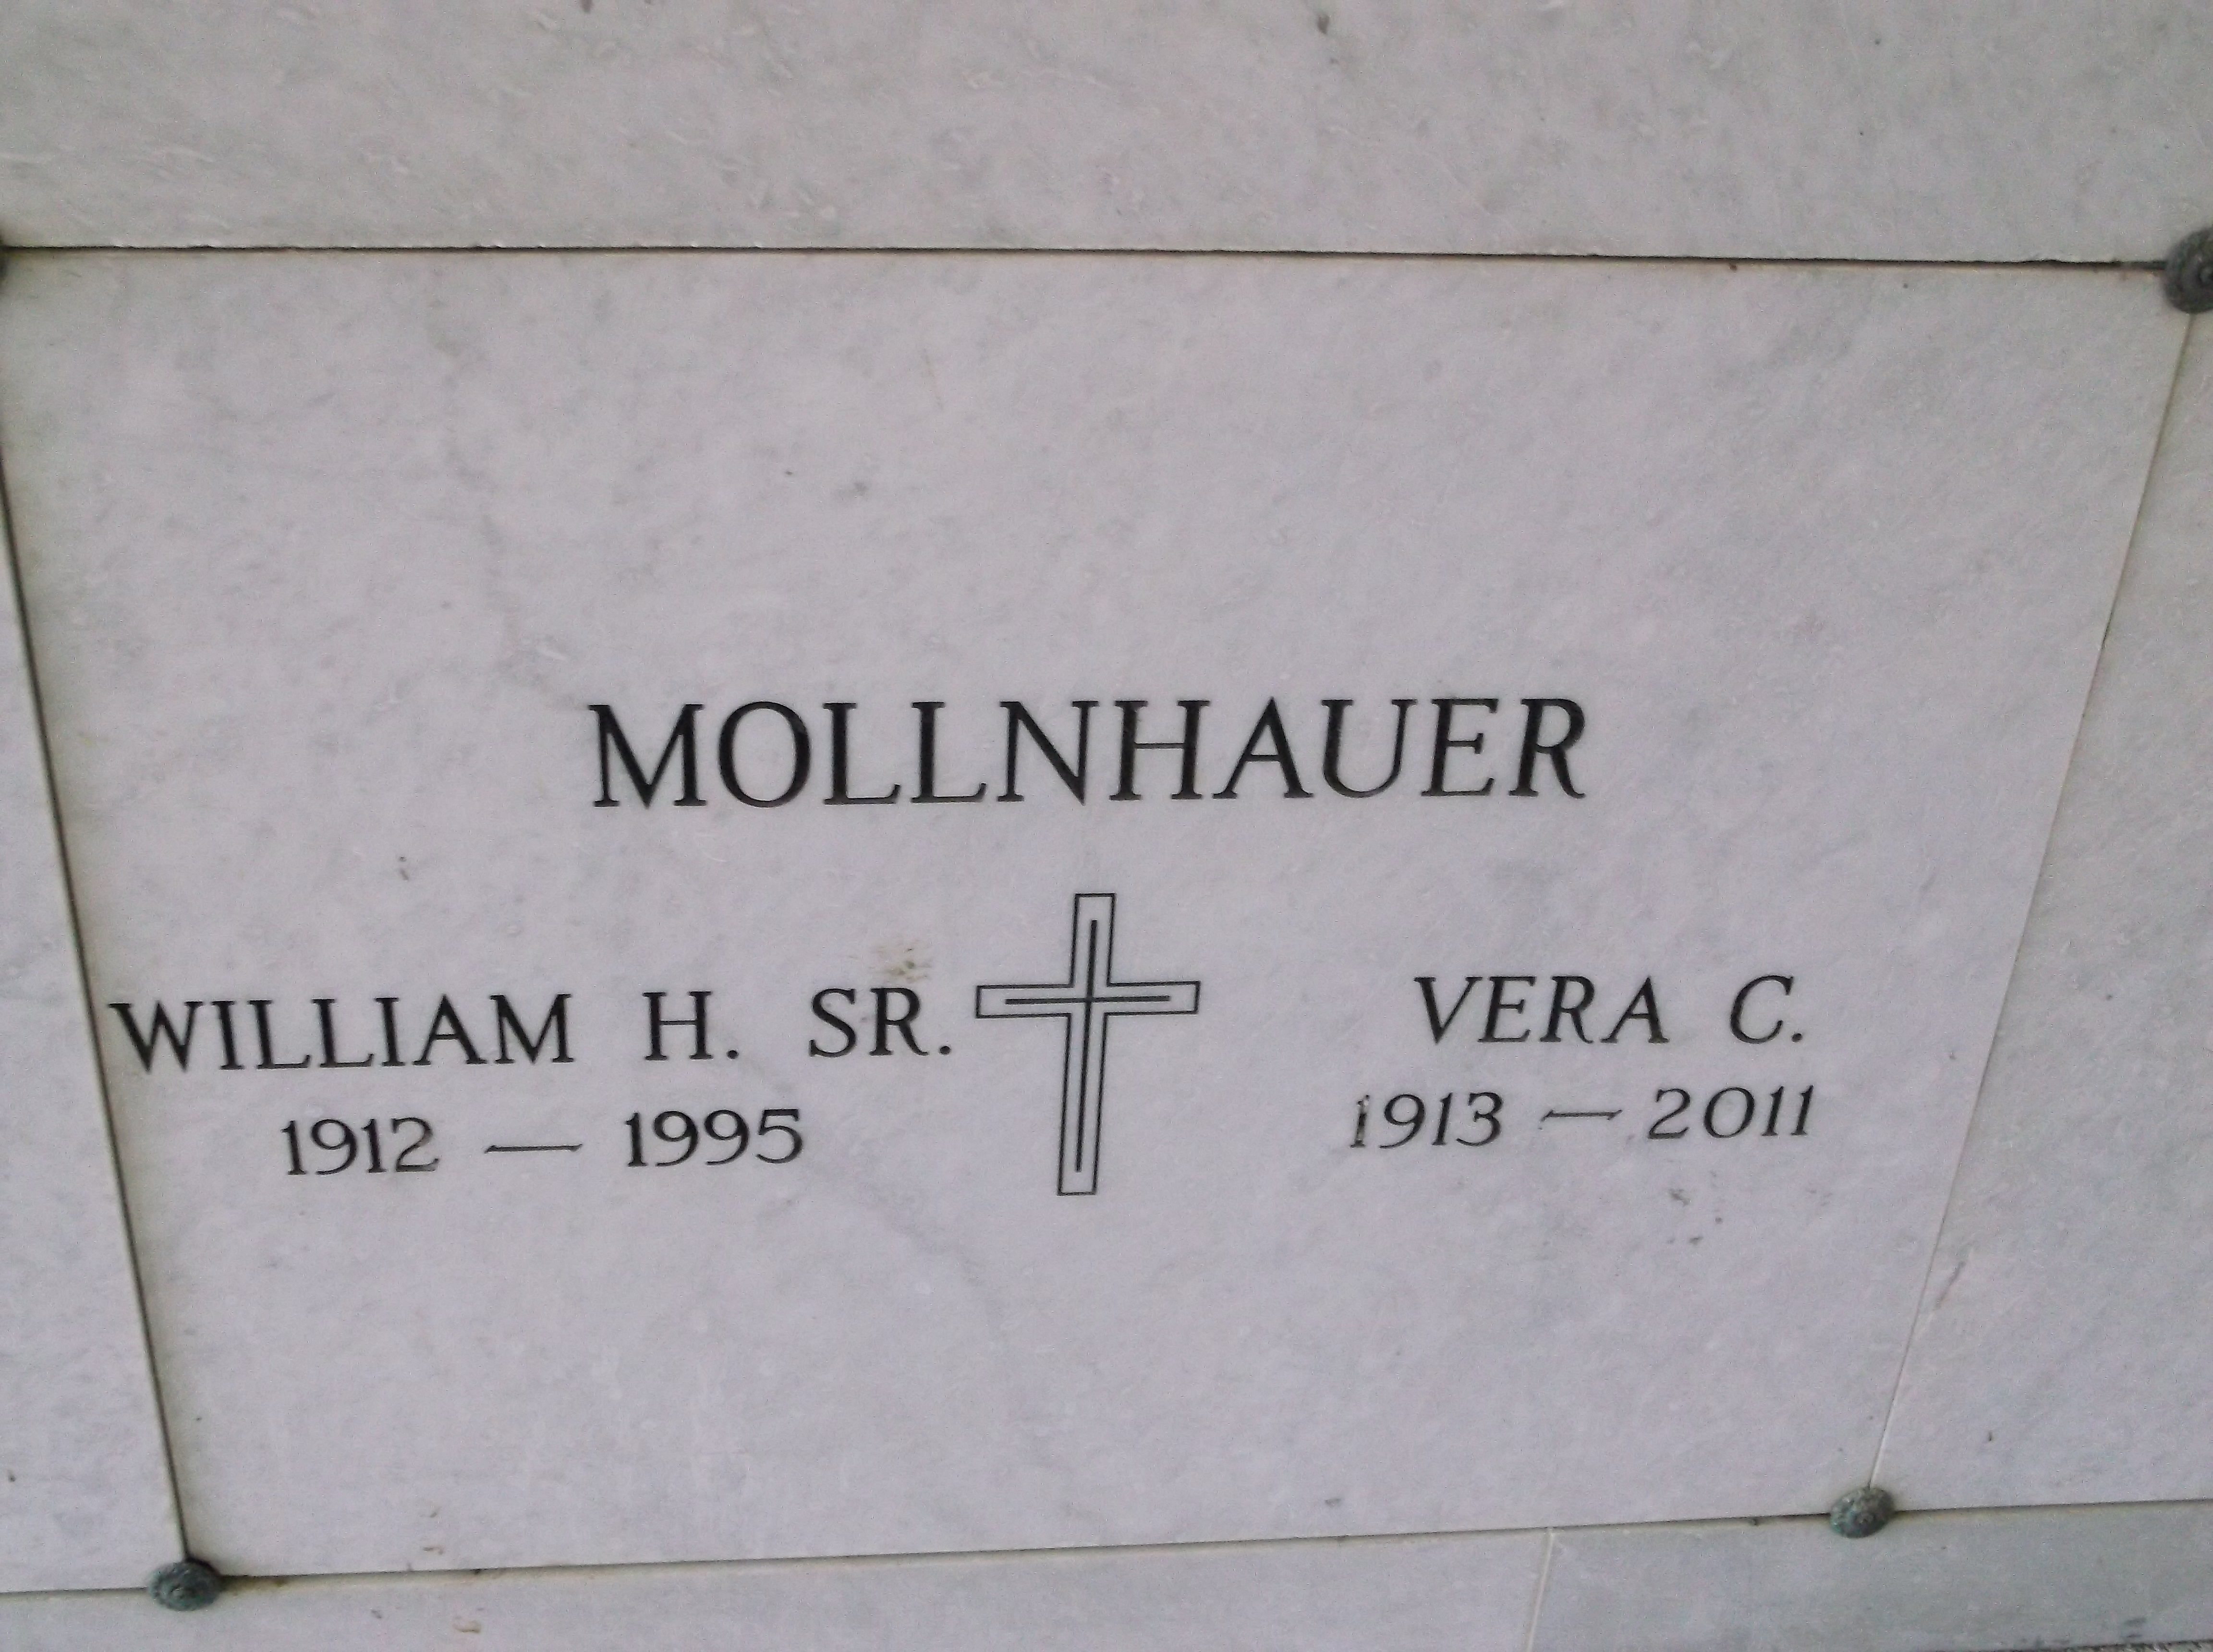 William H Mollnhauer, Sr